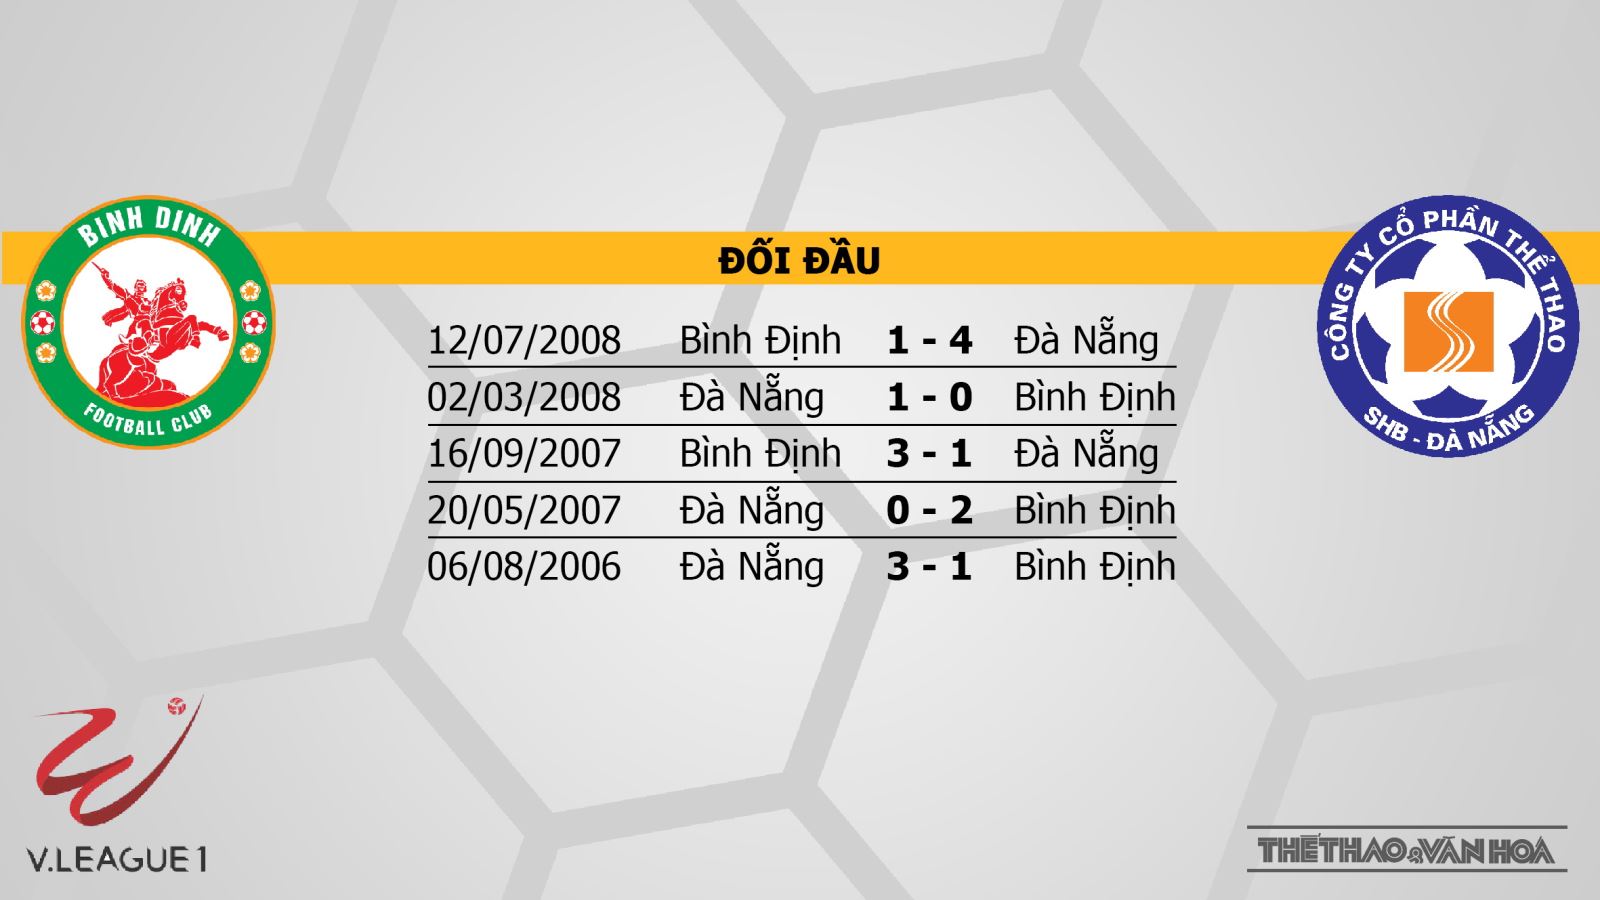 Trực tiếp bóng đá hôm nay: Bình Định vs Đà Nẵng. BĐTV, VTV6 trực tiếp V-League 2021 vòng 4. Trực tiếp Bình Định vs Đà Nẵng. Trực tiếp Nam Định vs Viettel